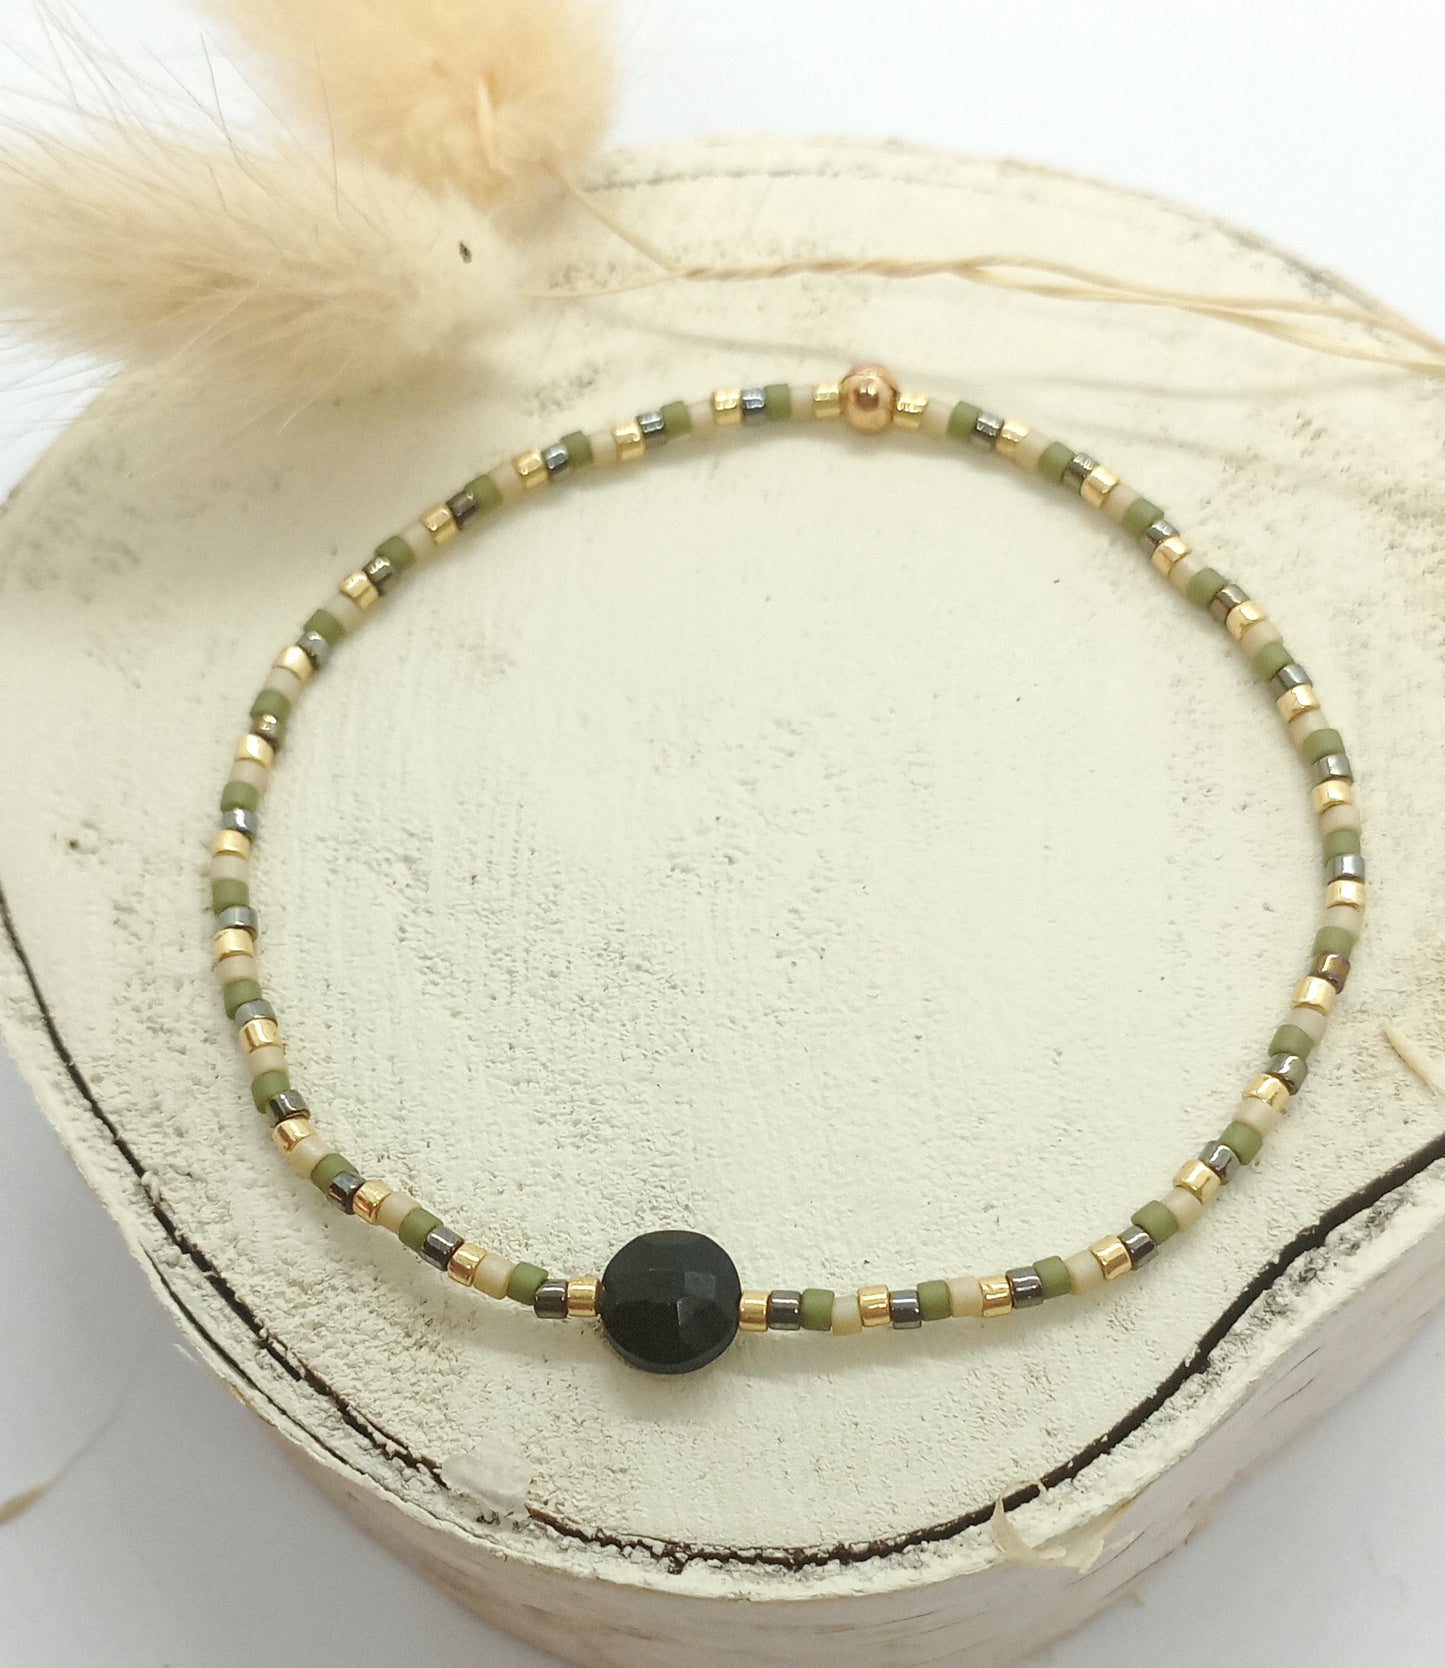 Bracelet en perles miyuki kaki et pierre onyx noire posé sur un rond de bois écru. 